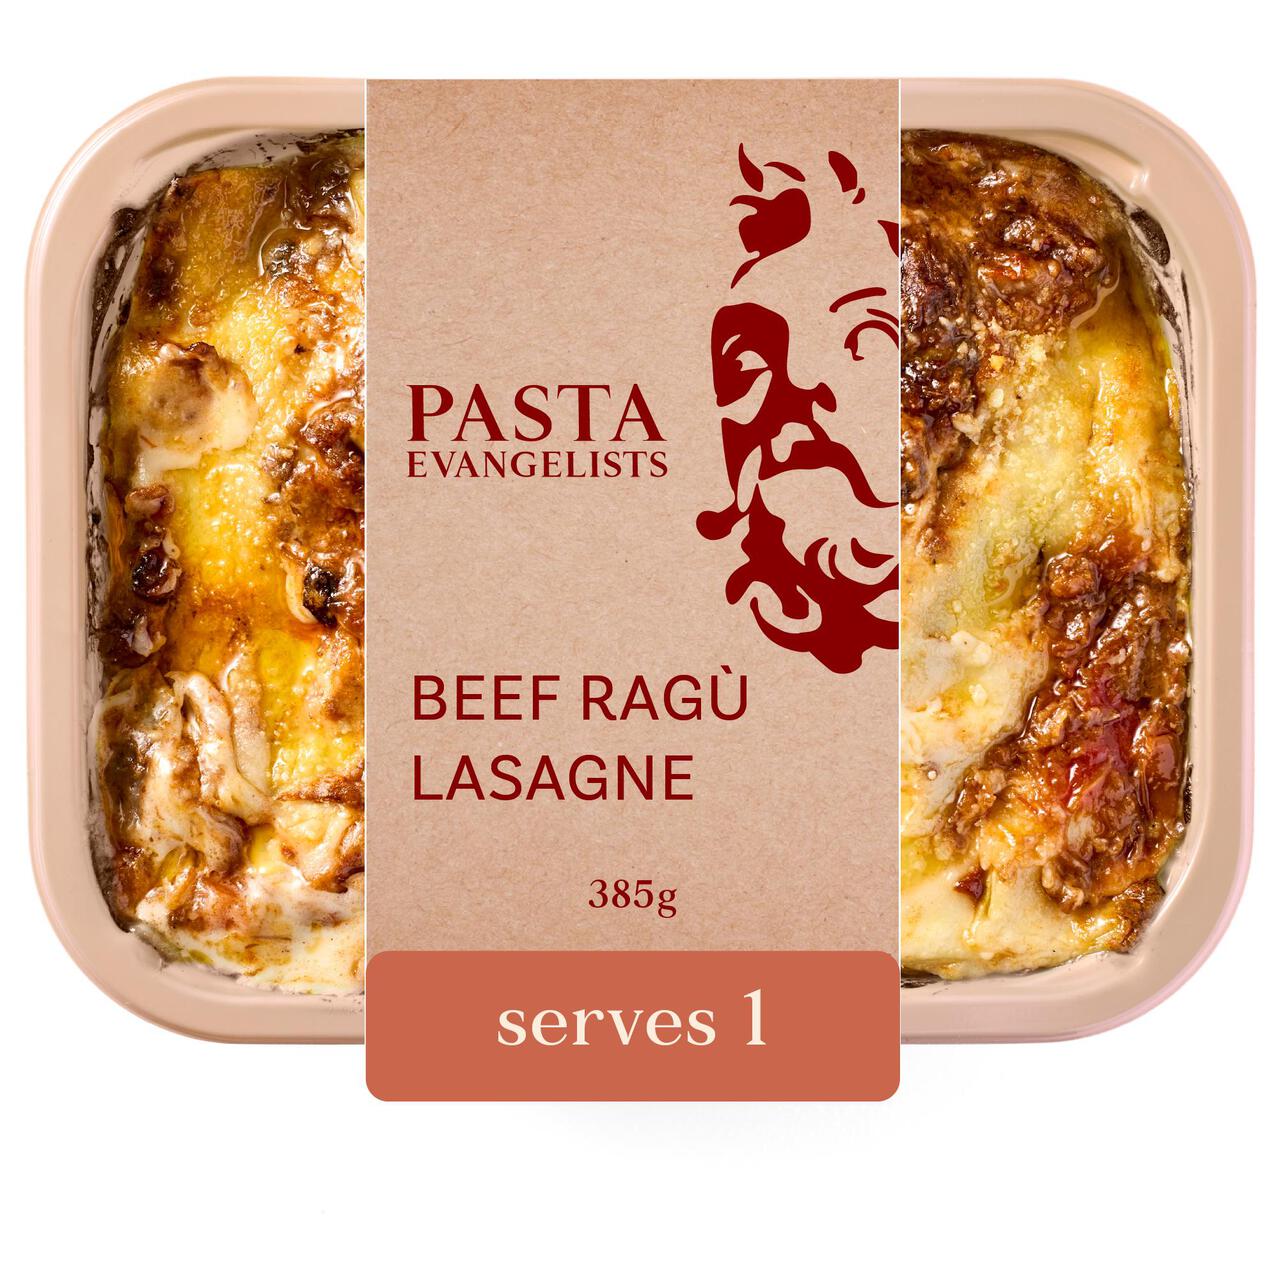 Pasta Evangelists Beef Ragu Lasagne 385g